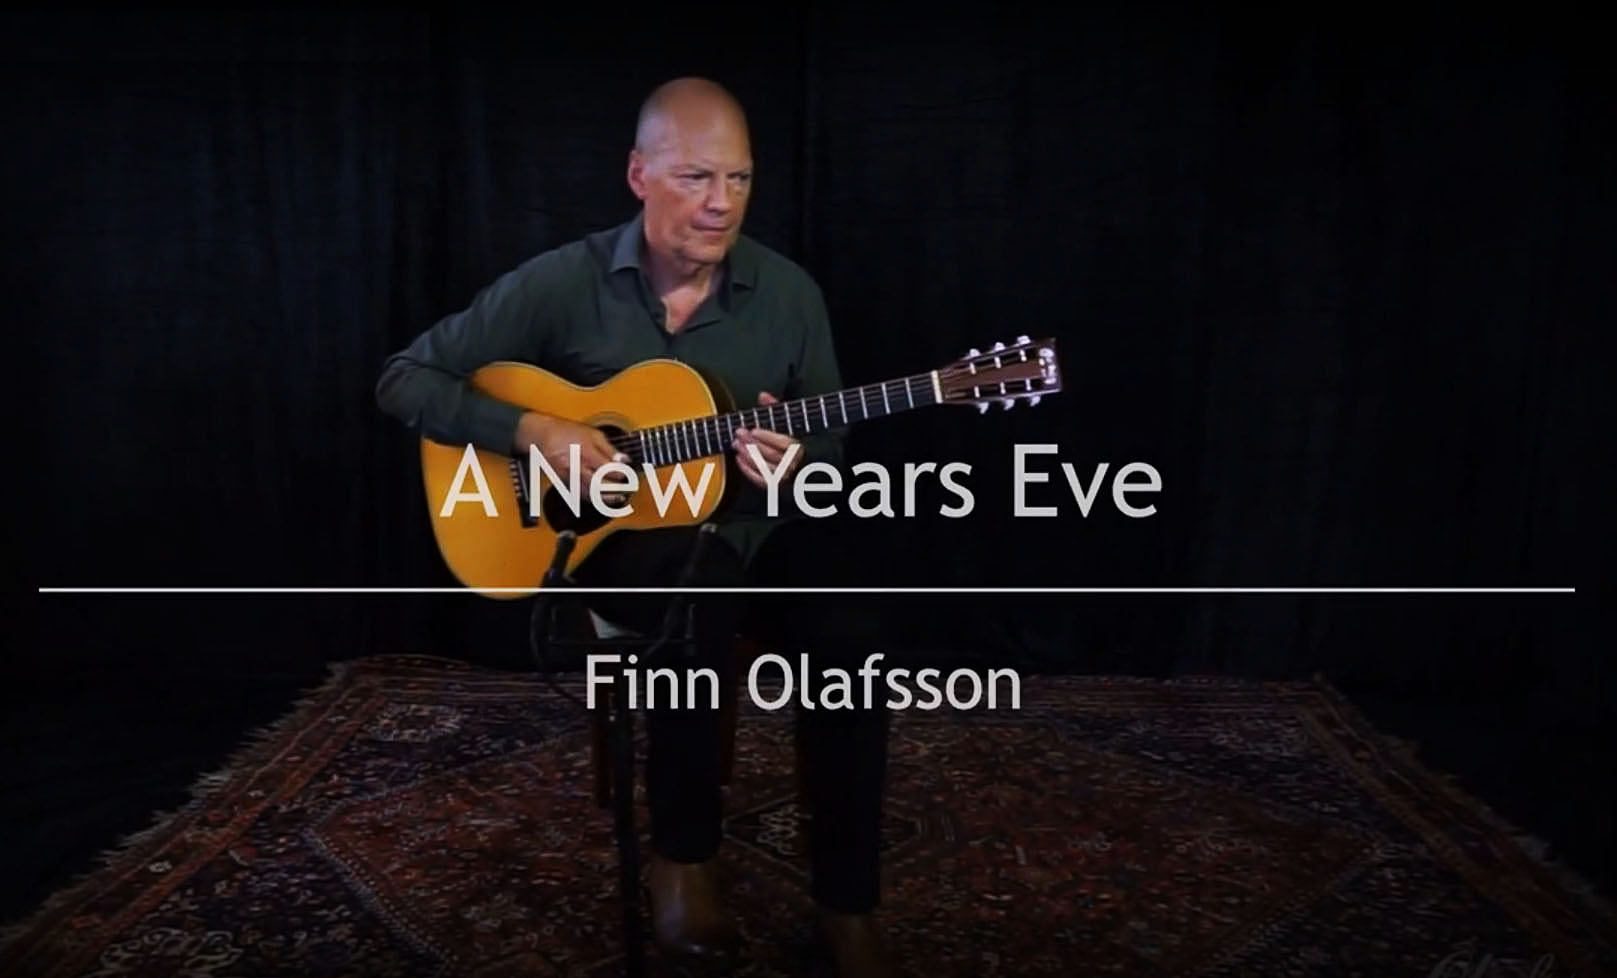 Finn Olafsson: A New Years Eve